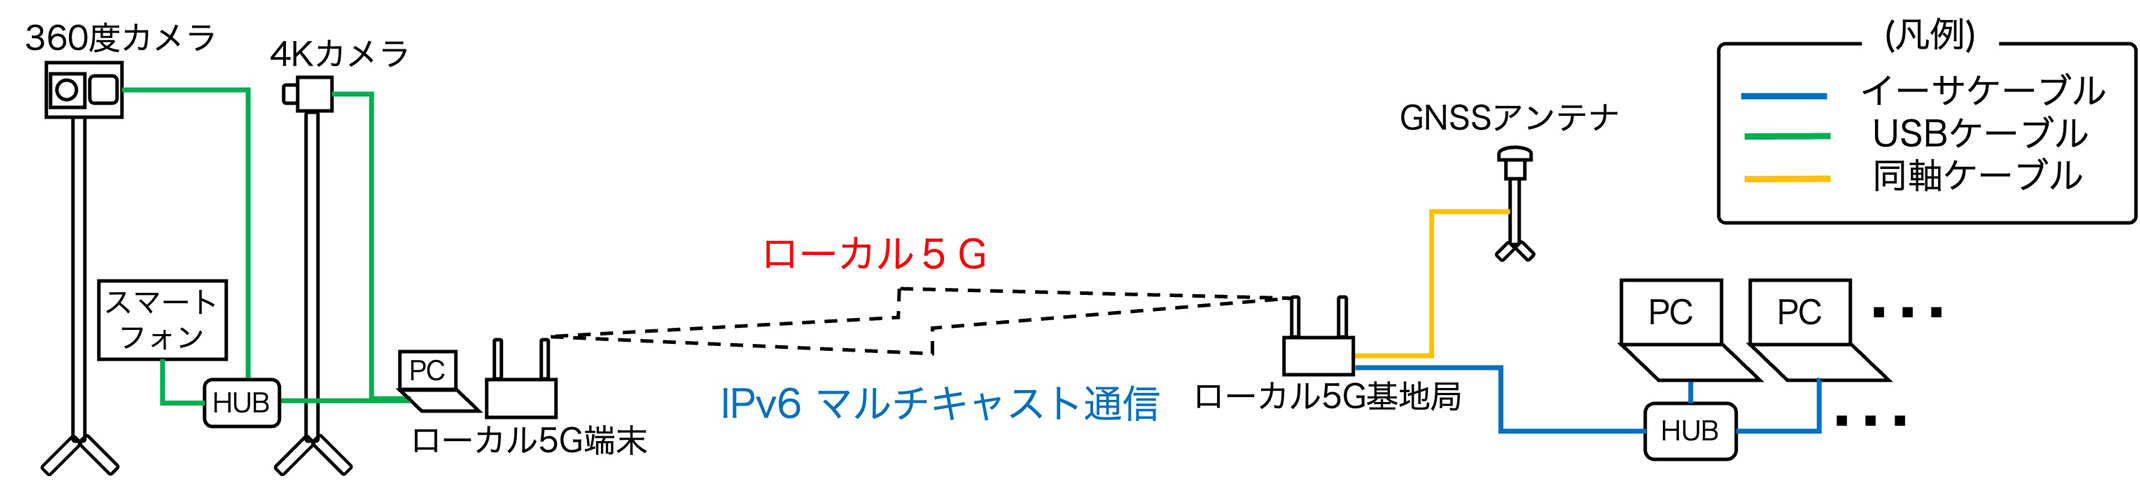 図12　4Kカメラ・360度カメラの配信システム概要図